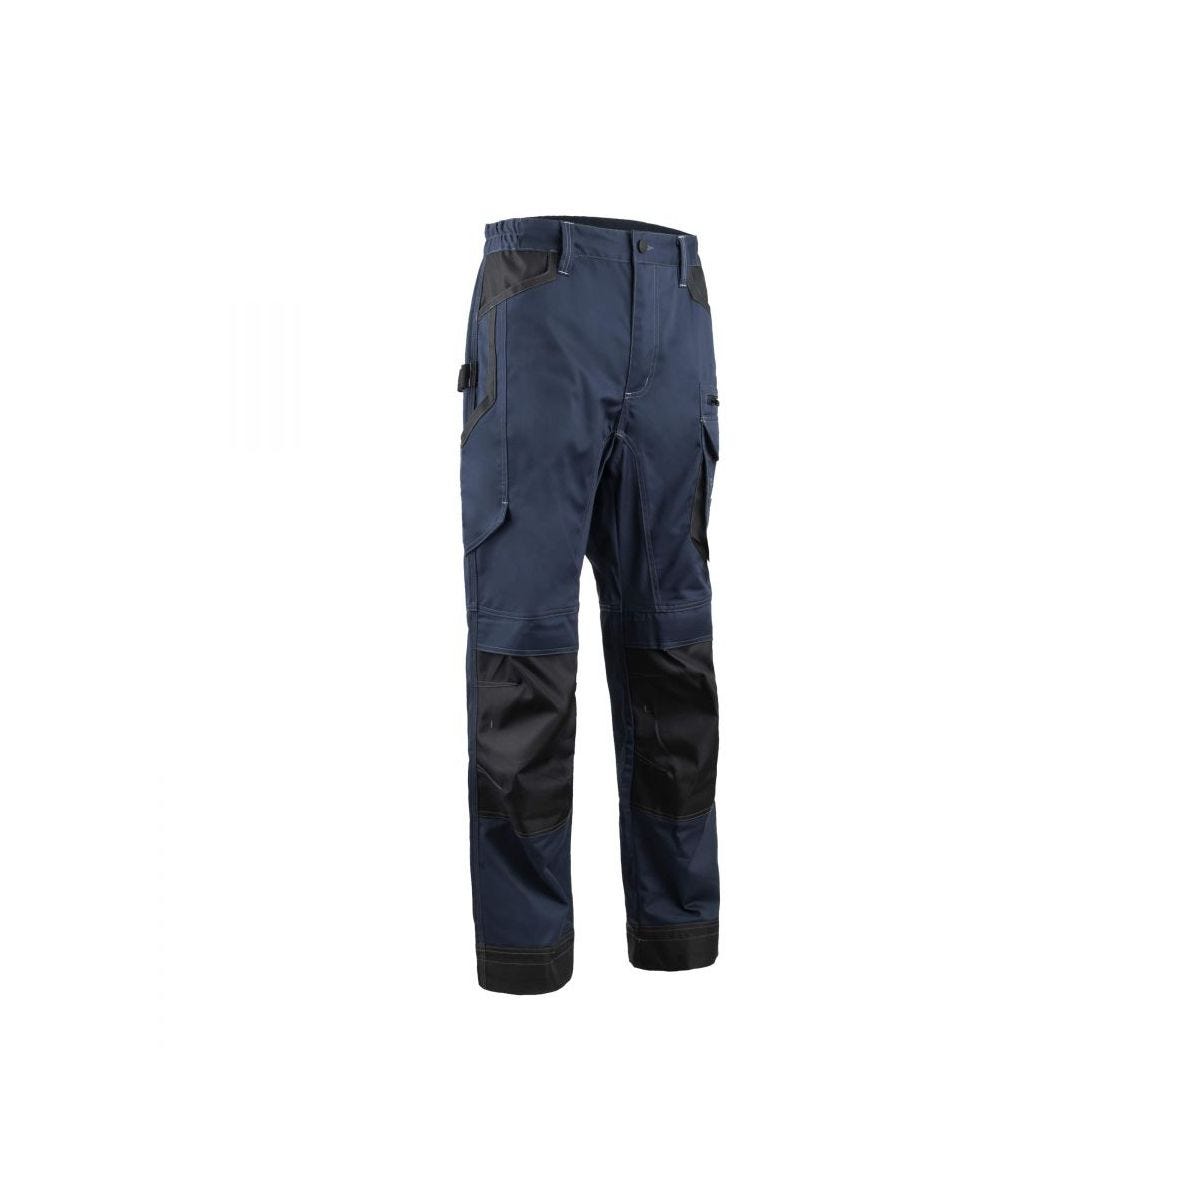 Pantalon BARVA Bleu nuit - Coverguard - Taille 4XL 0